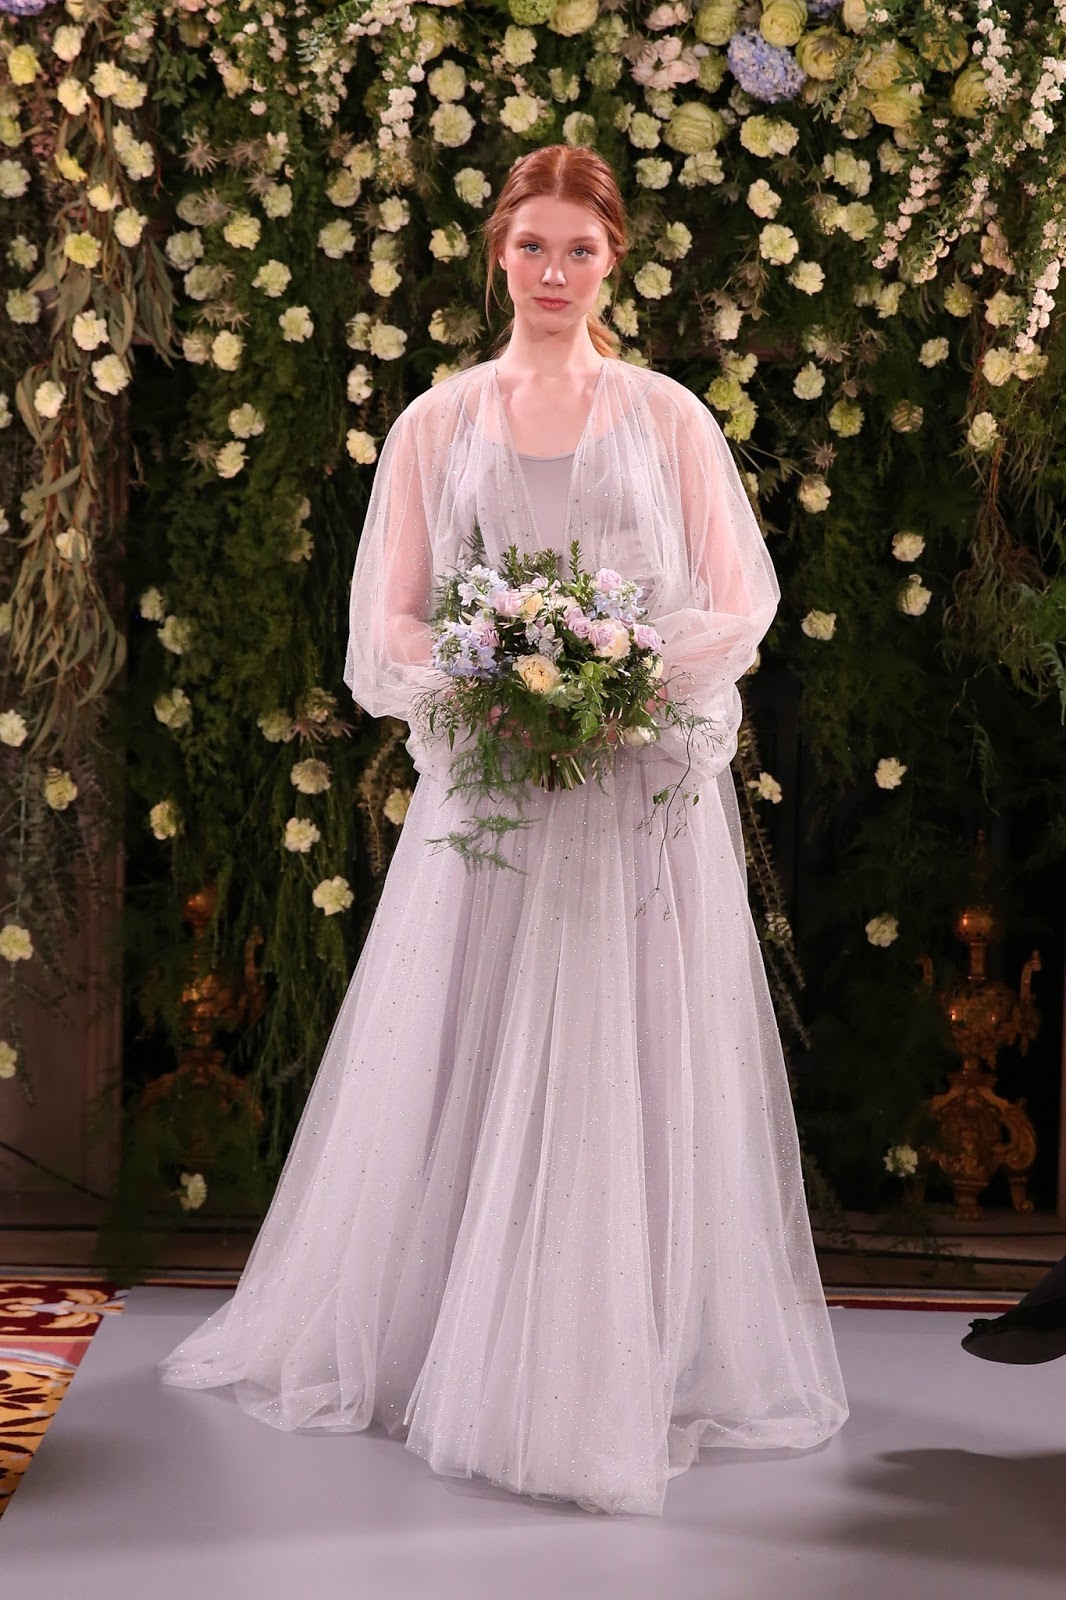 Bridal Beautiful:Jenny Packham